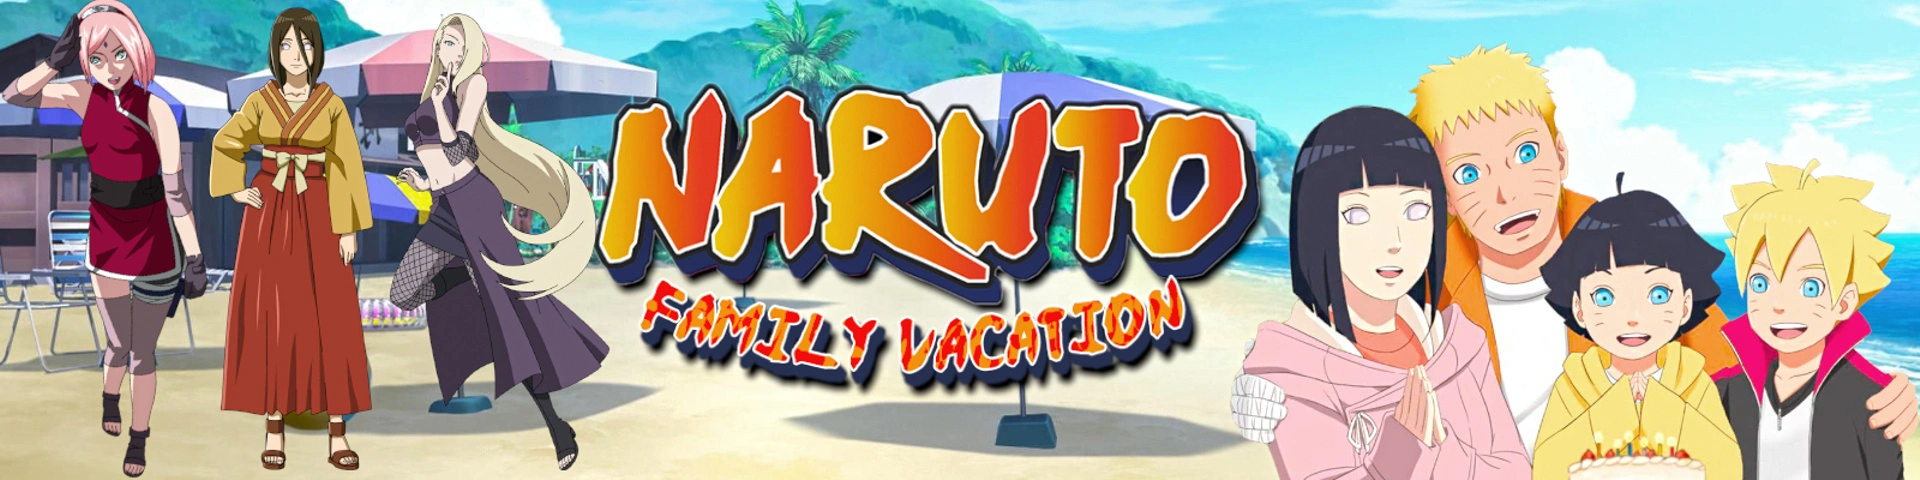 Naruto: Family Vacation [v1.0 Fixed] main image